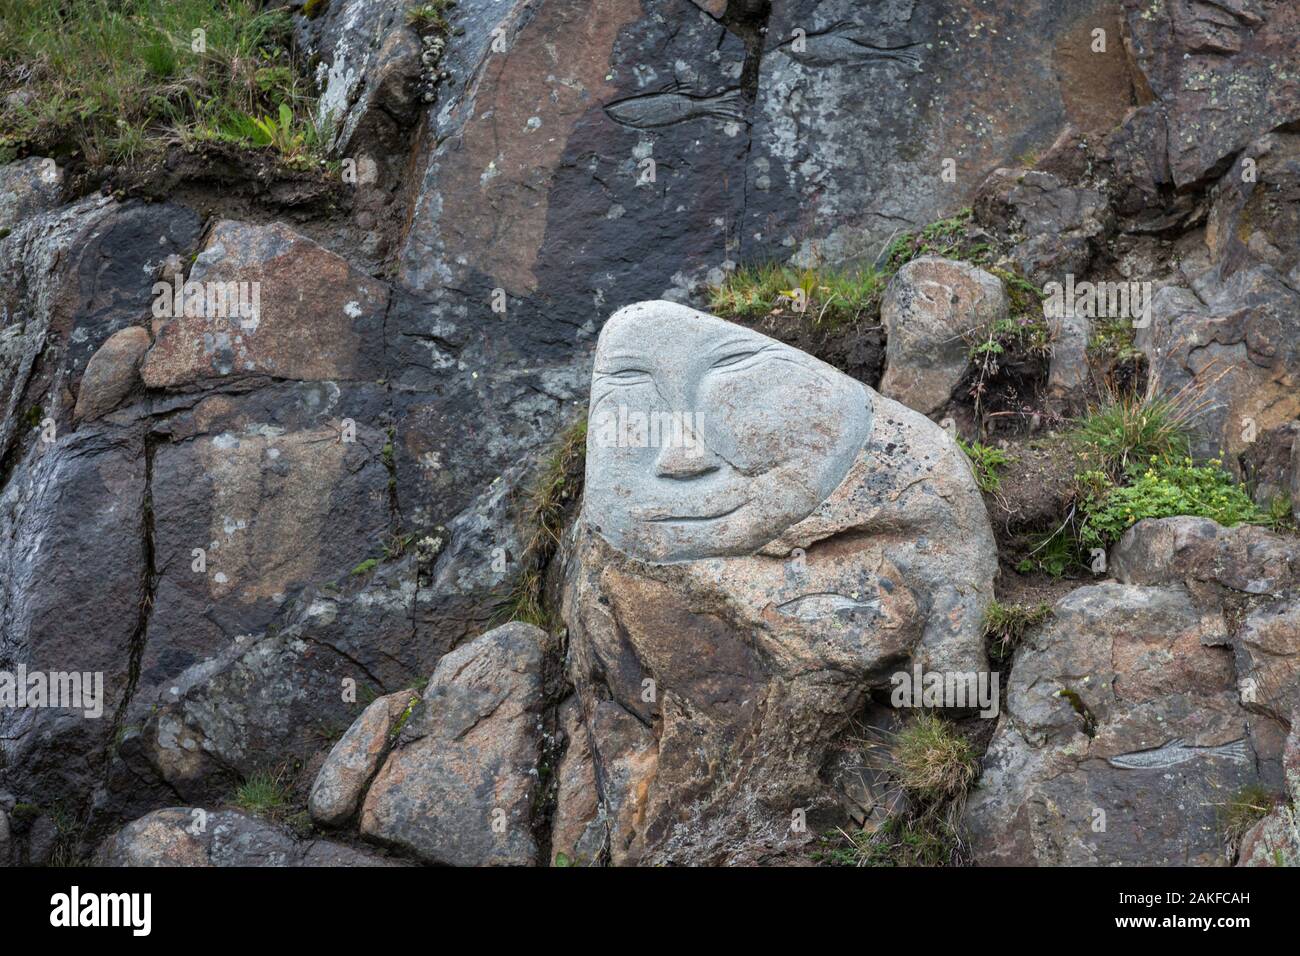 Rock sculpture, partie de la collection Homme & Pierre à Qaqortoq, Groenland Banque D'Images